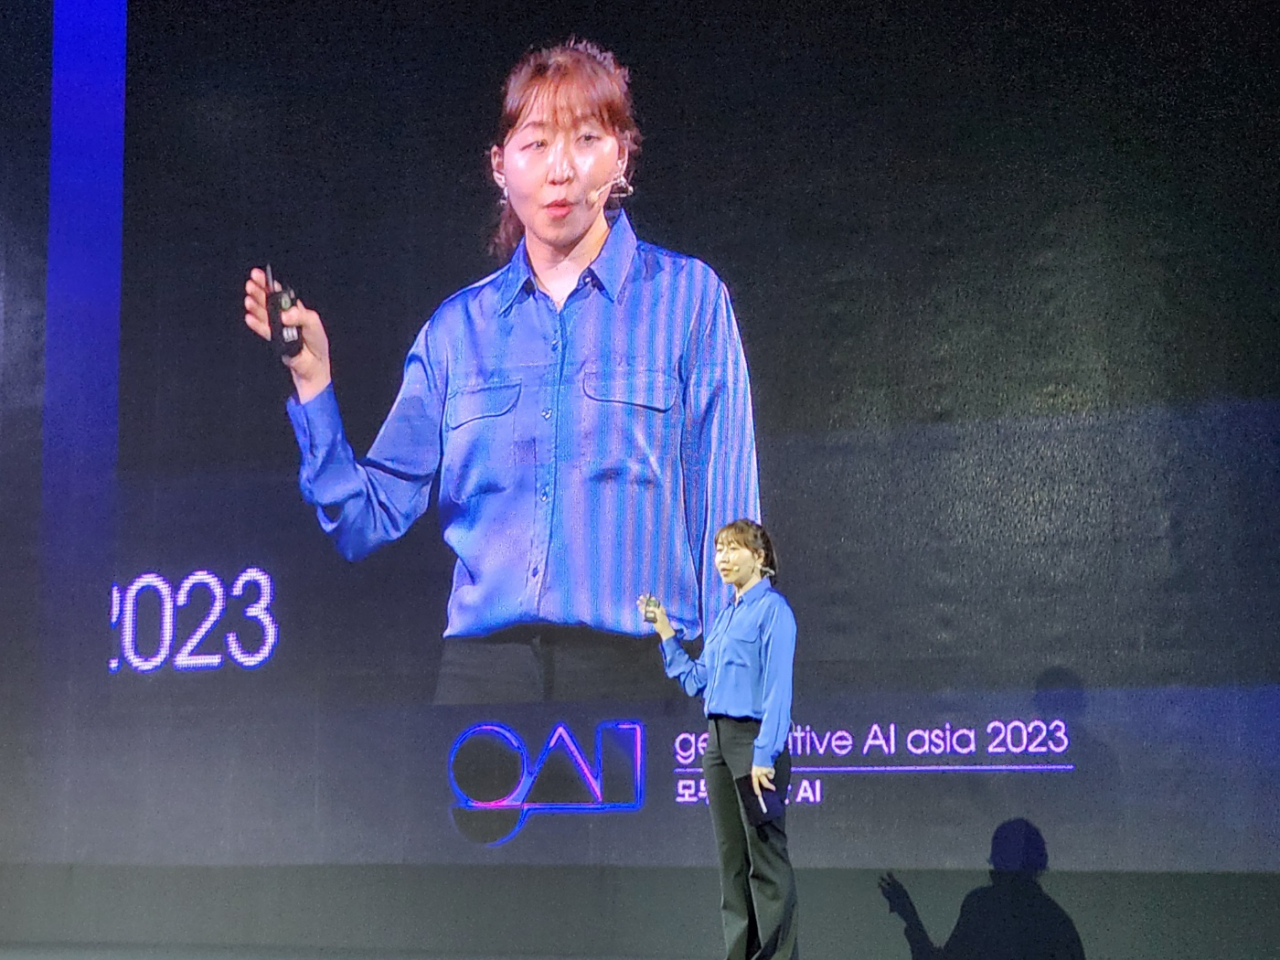 31일 열린 생성 AI 컨퍼런스 ‘GAA 2023(Generative AI Asia 2023)’에서 키노트를 진행 중인 강수진 프롬프트 엔지니어. [뤼튼테크놀로지스 제공]